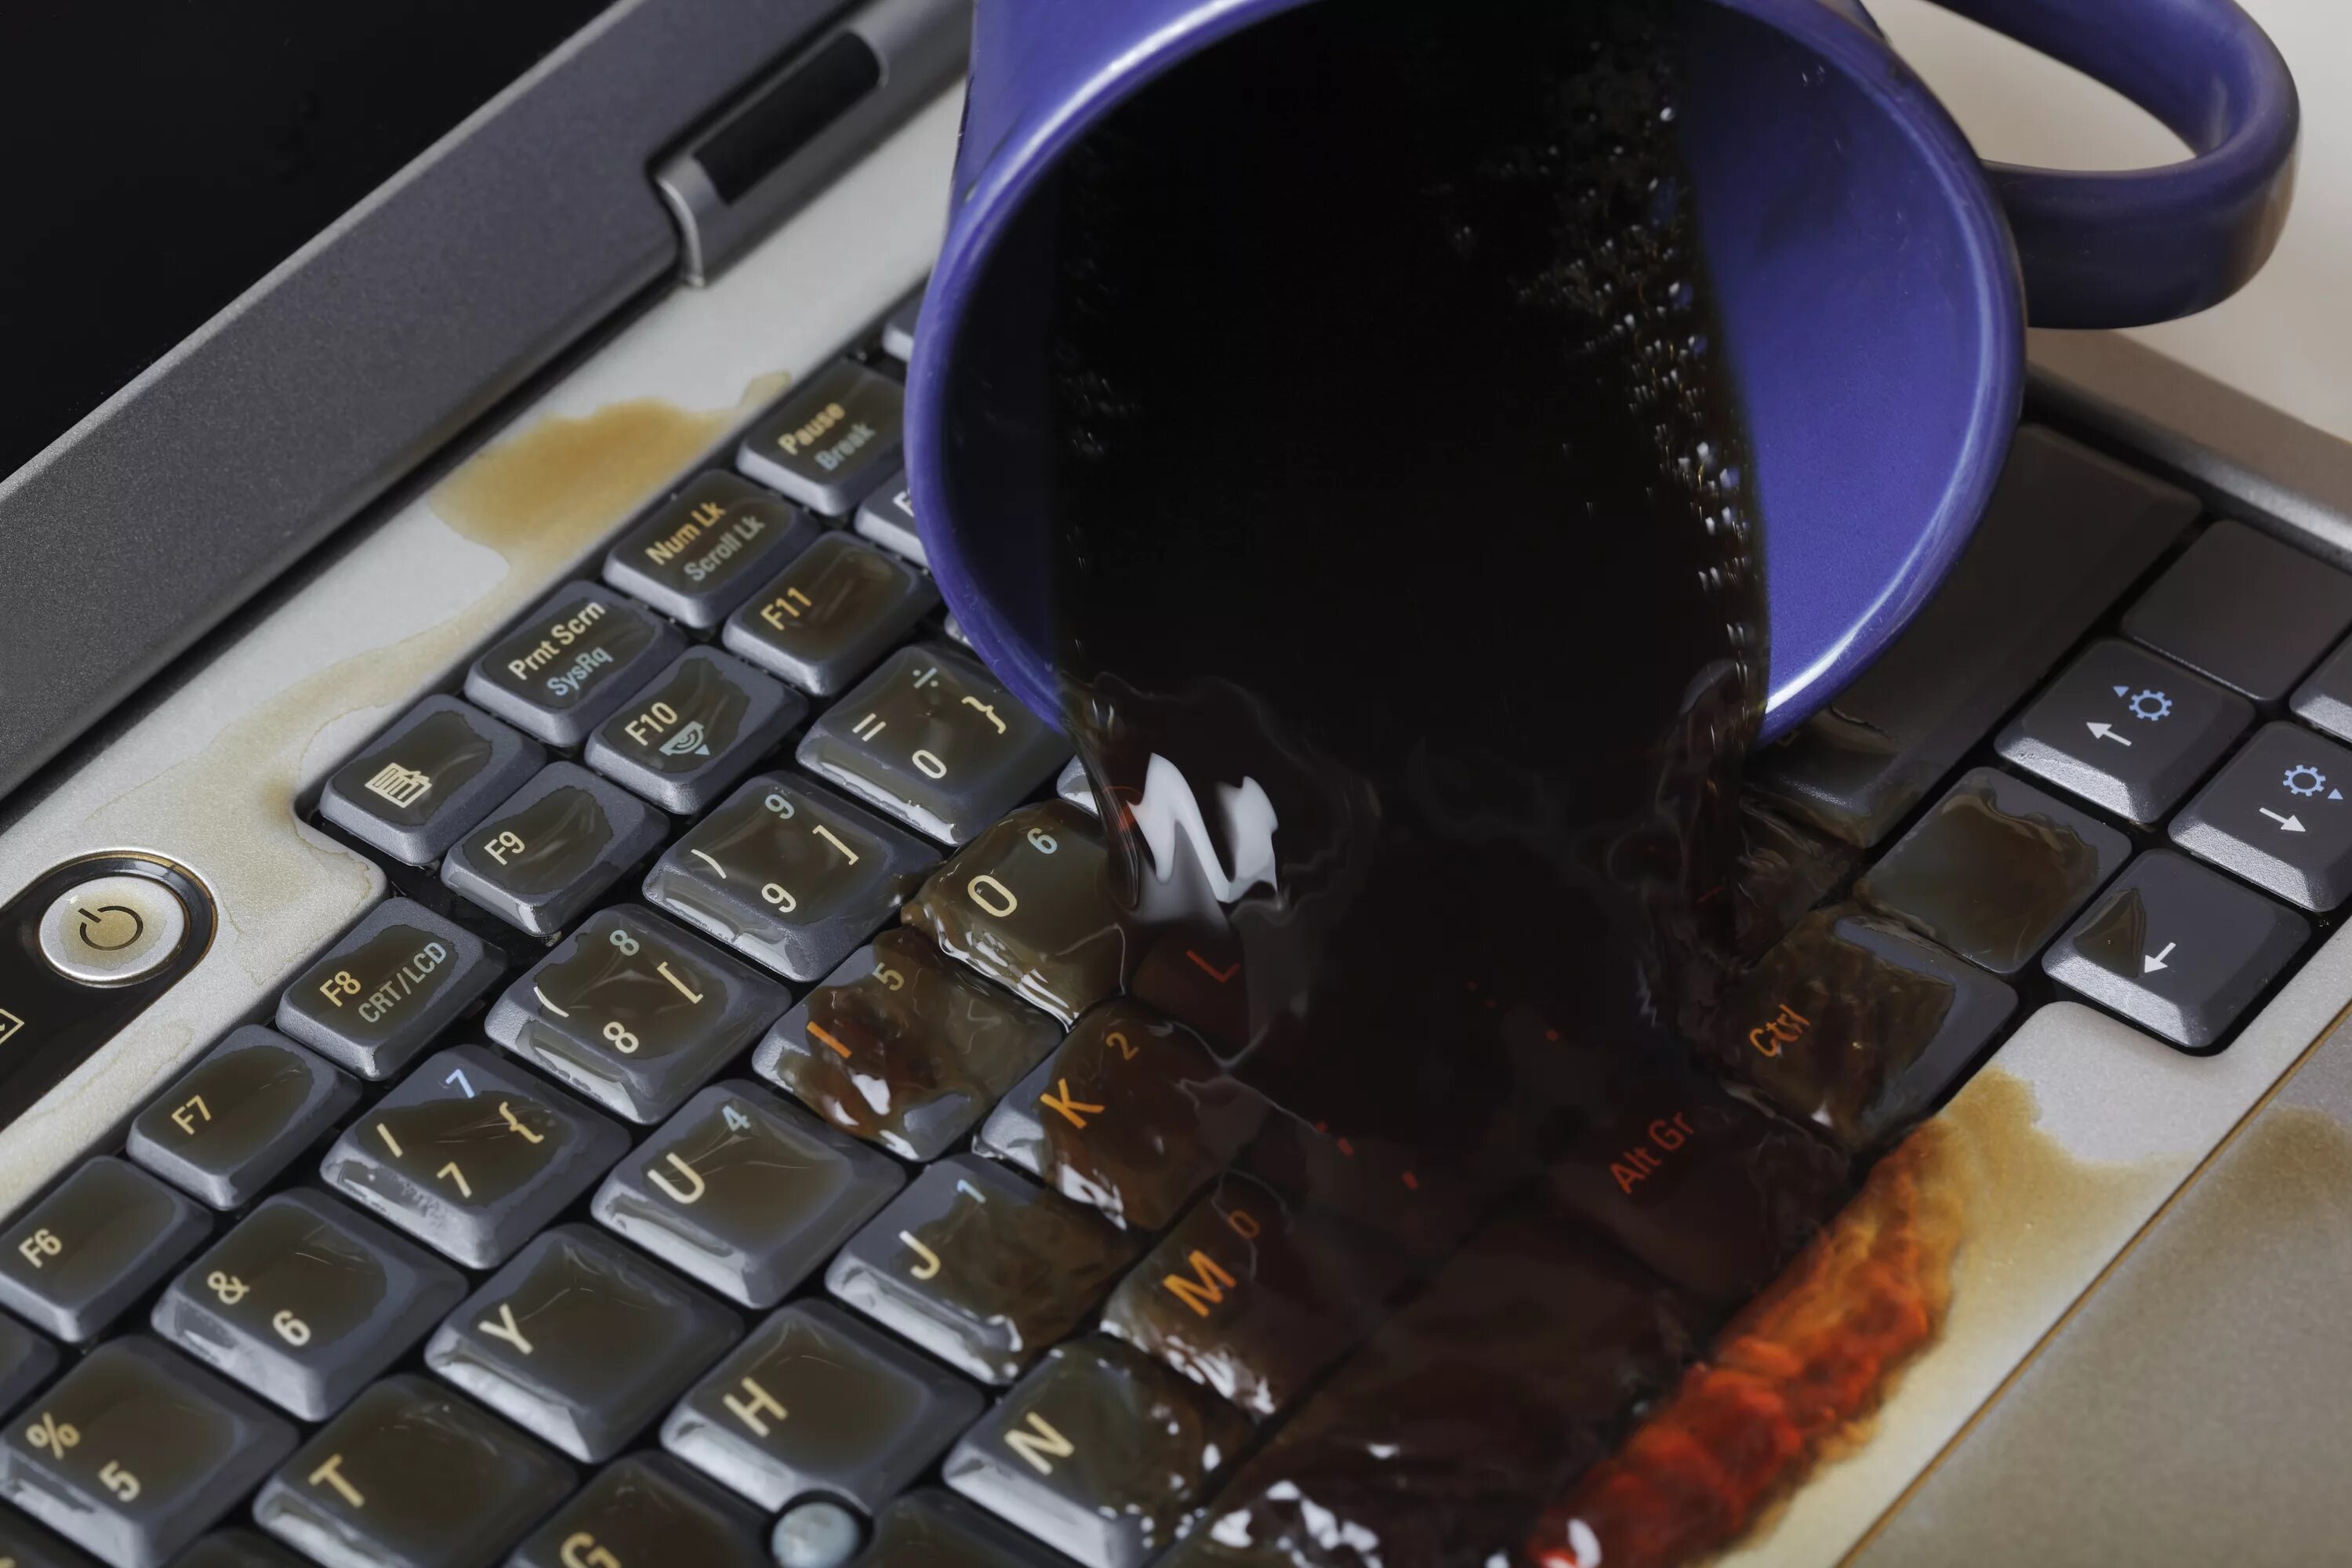 Пролитый кофе на клавиатуру. Пролили воду на клавиатуру ноутбука. Пролил чай на клавиатуру. Кофе на клавиатуру ноутбука. В ноутбук попала вода